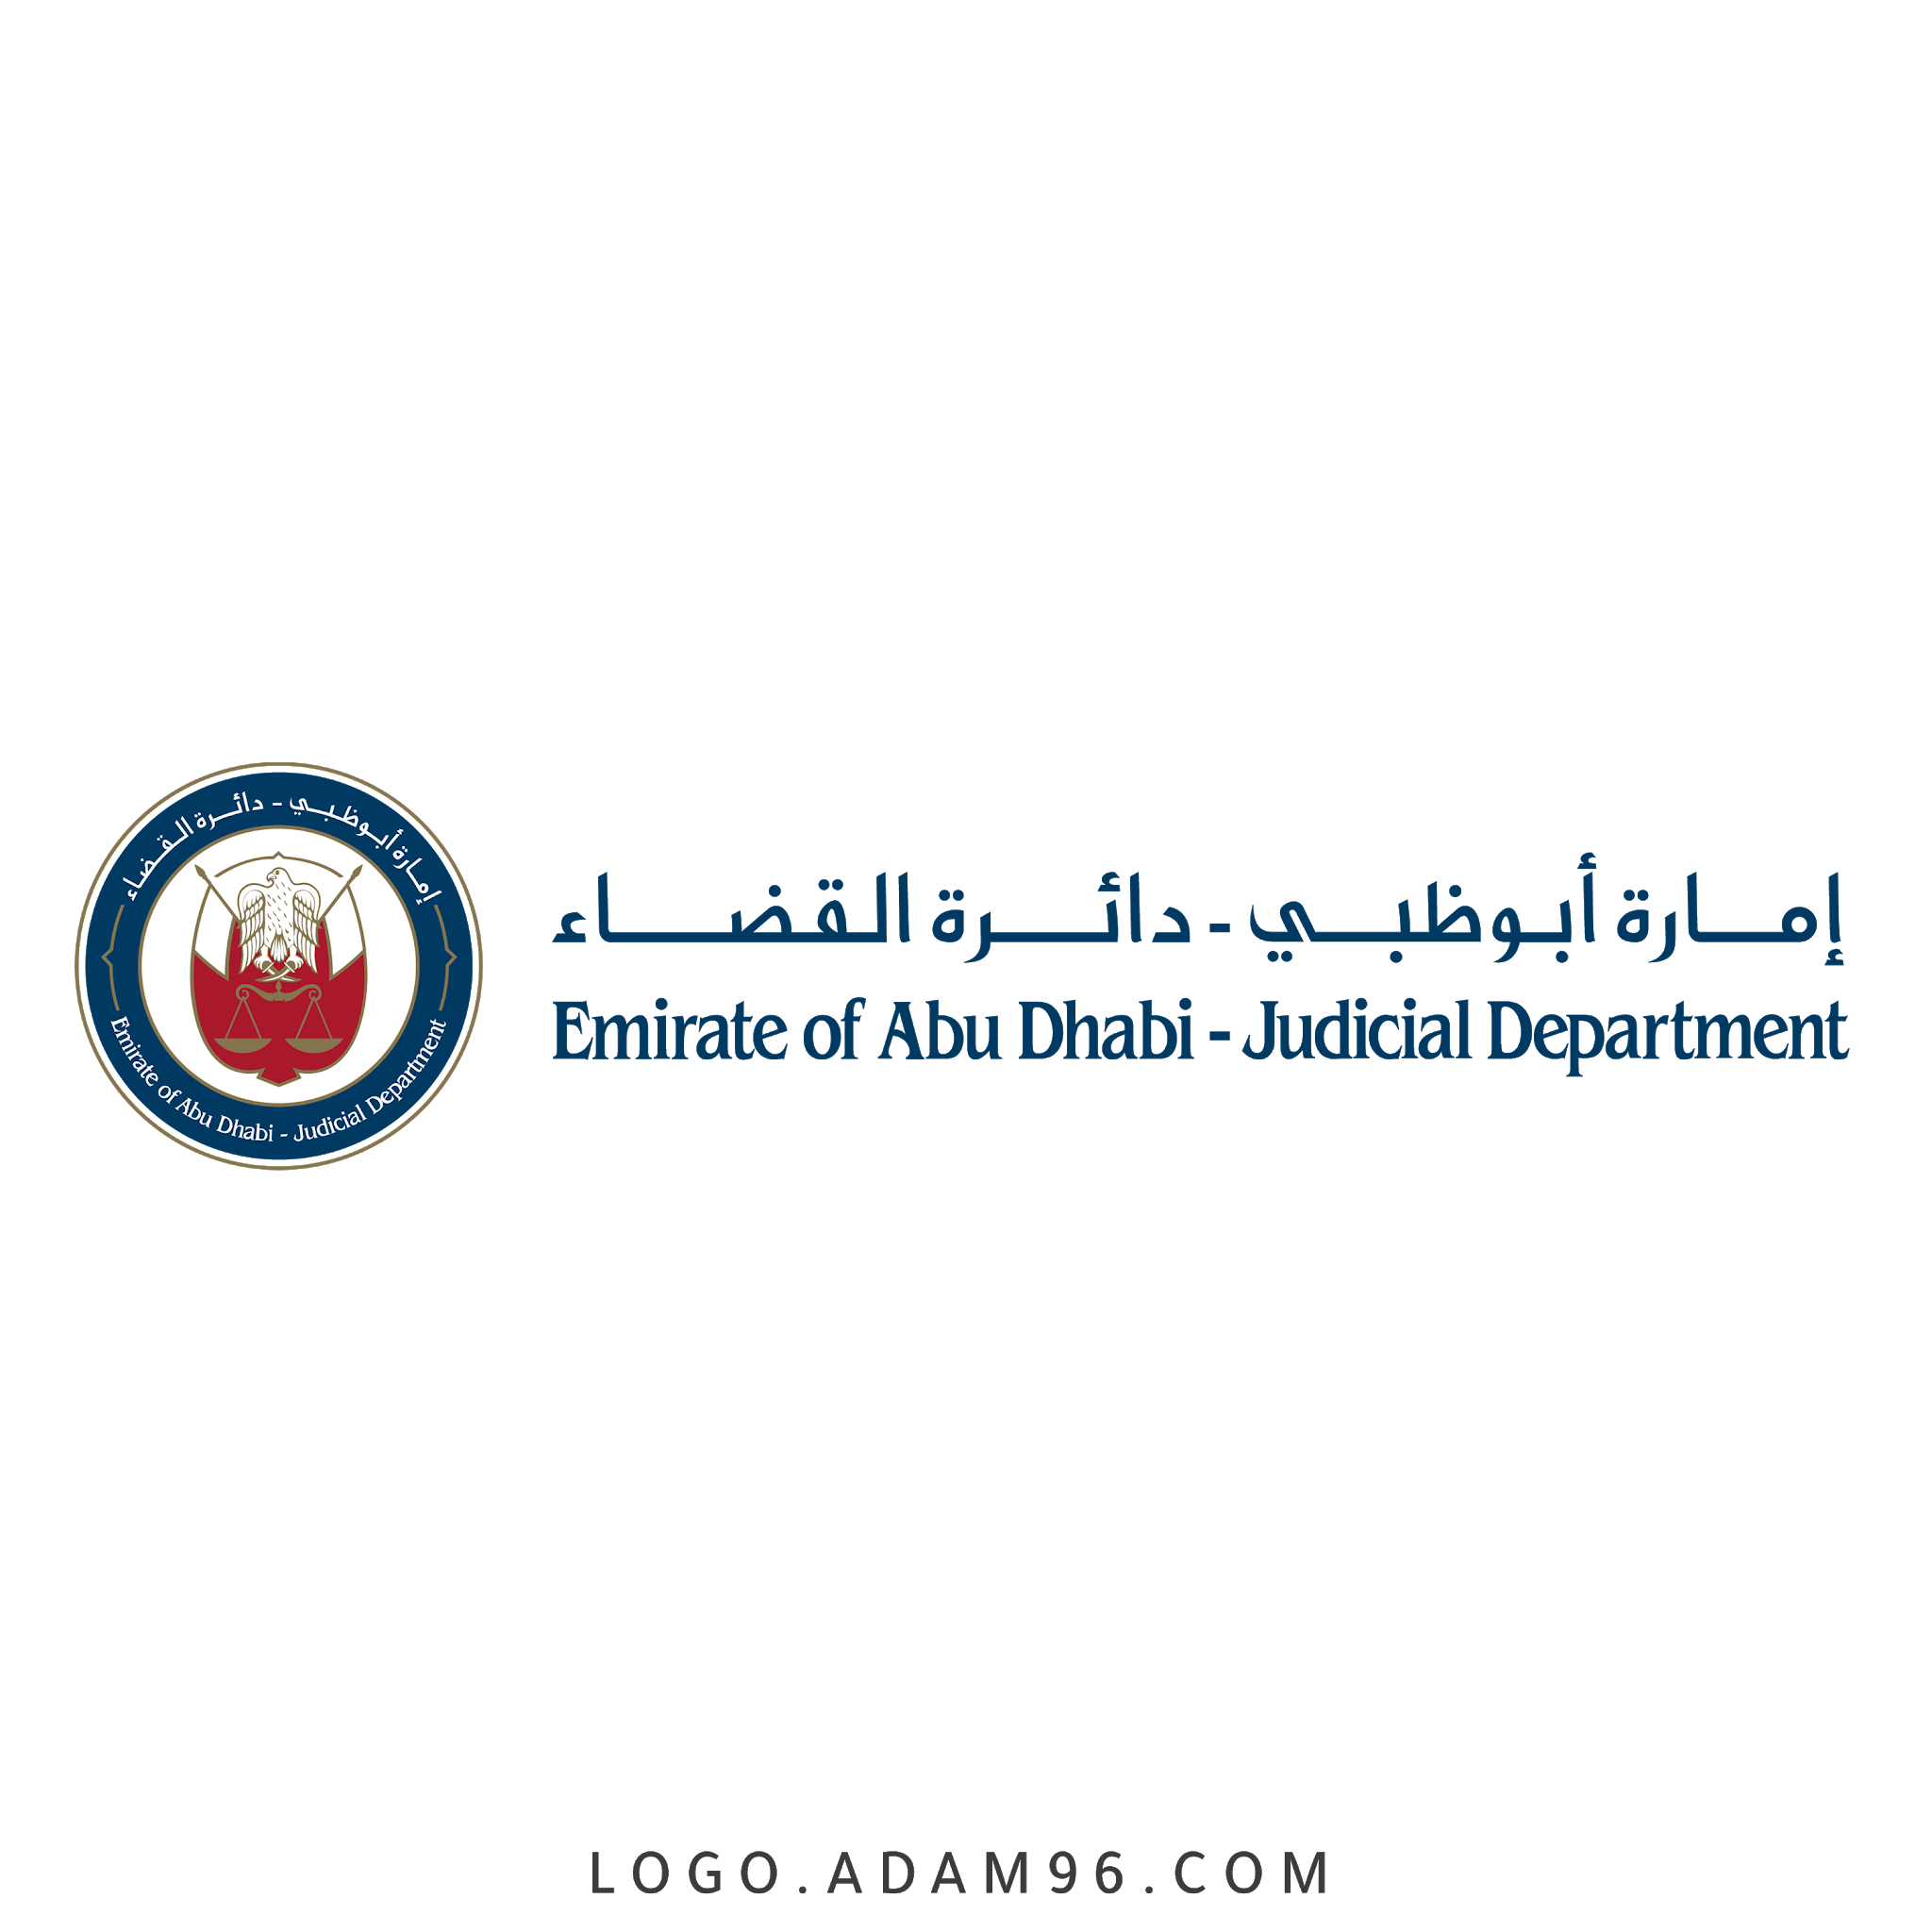 تحميل شعار امارة أبوظبي دائرة القضاء لوجو رسمي عالي الجودة بصيغة PNG